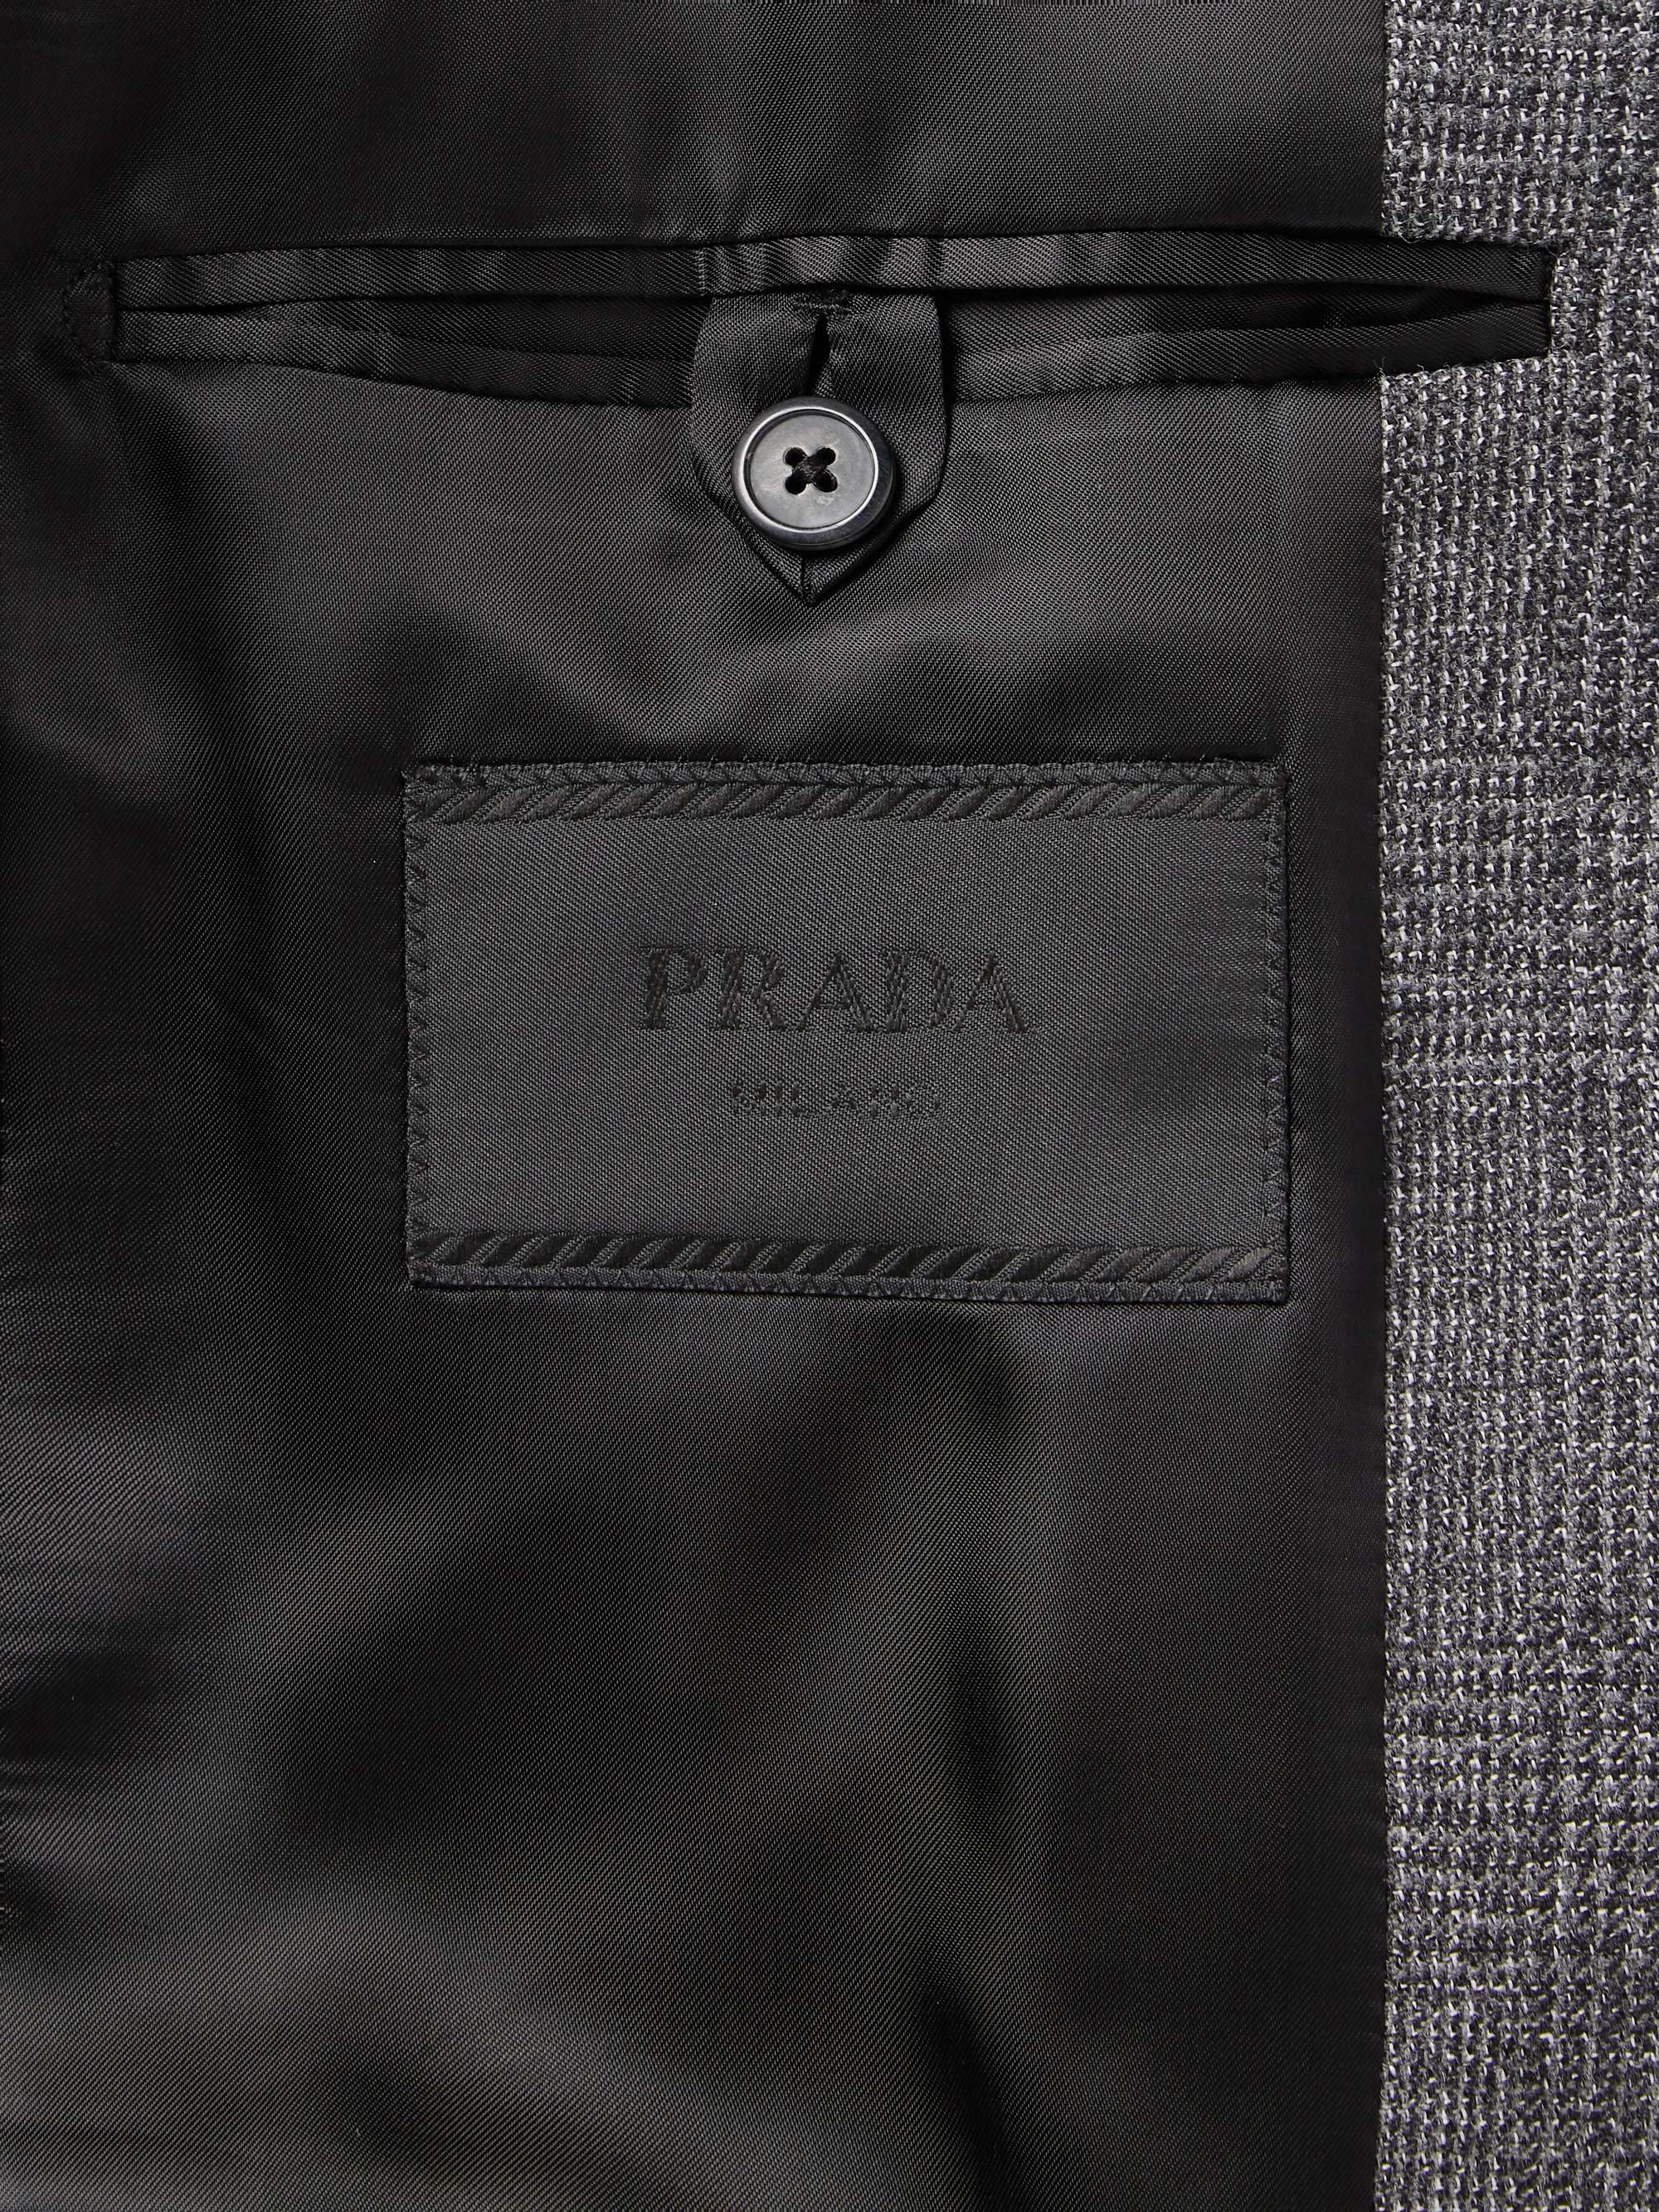 PRADA Grey Prince of Wales Checked Virgin Wool-Blend Suit Jacket